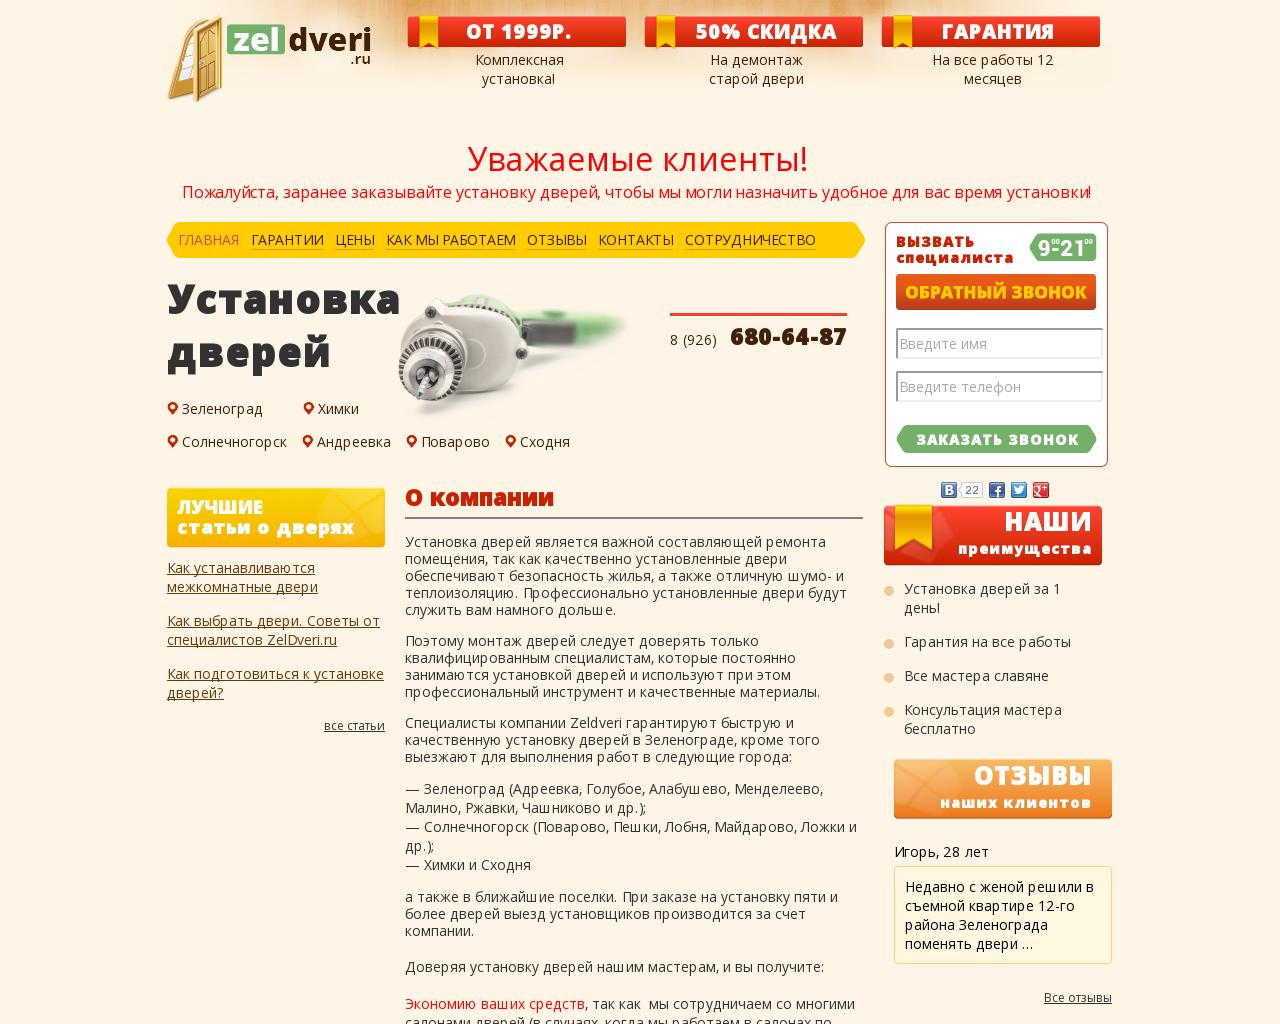 Изображение сайта zeldveri.ru в разрешении 1280x1024